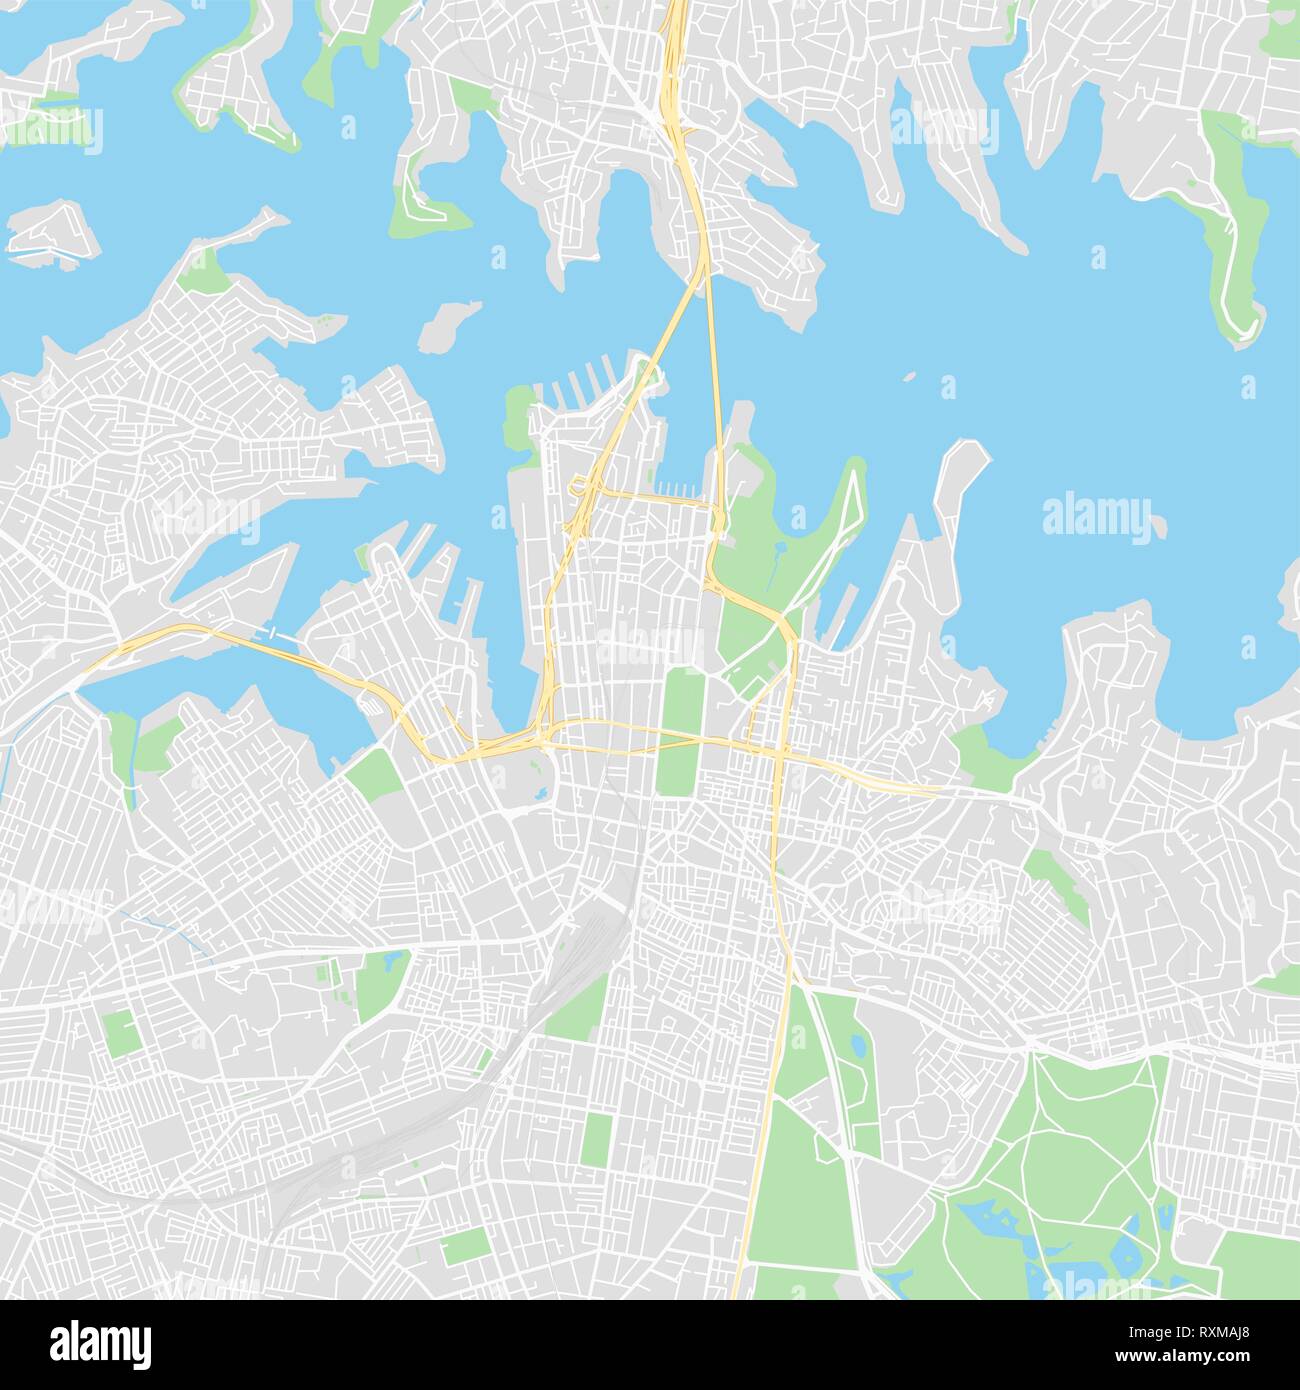 Downtown Vektorkarte von Sydney, Australien. Diese druckbare Karte von Sydney enthält Zeilen und klassischen farbigen Formen für die Landmasse, Parks, Wasser, große ein Stock Vektor